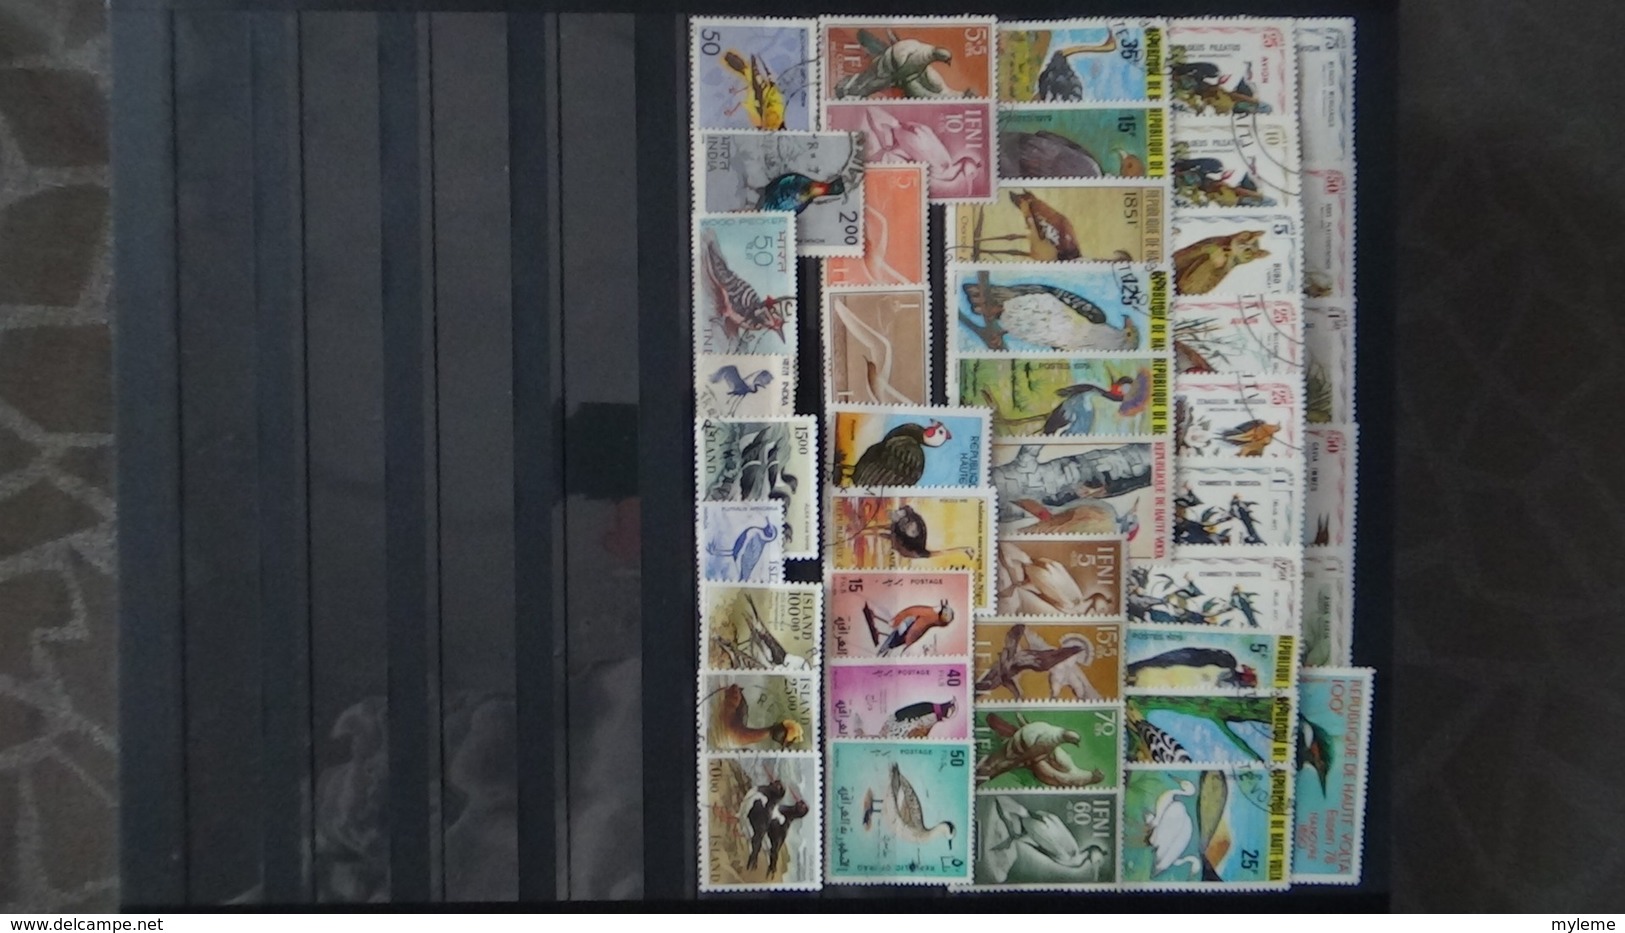 Belle thématiques sur les oiseaux . Plusieurs dizaines de timbres et 33 photos !!!